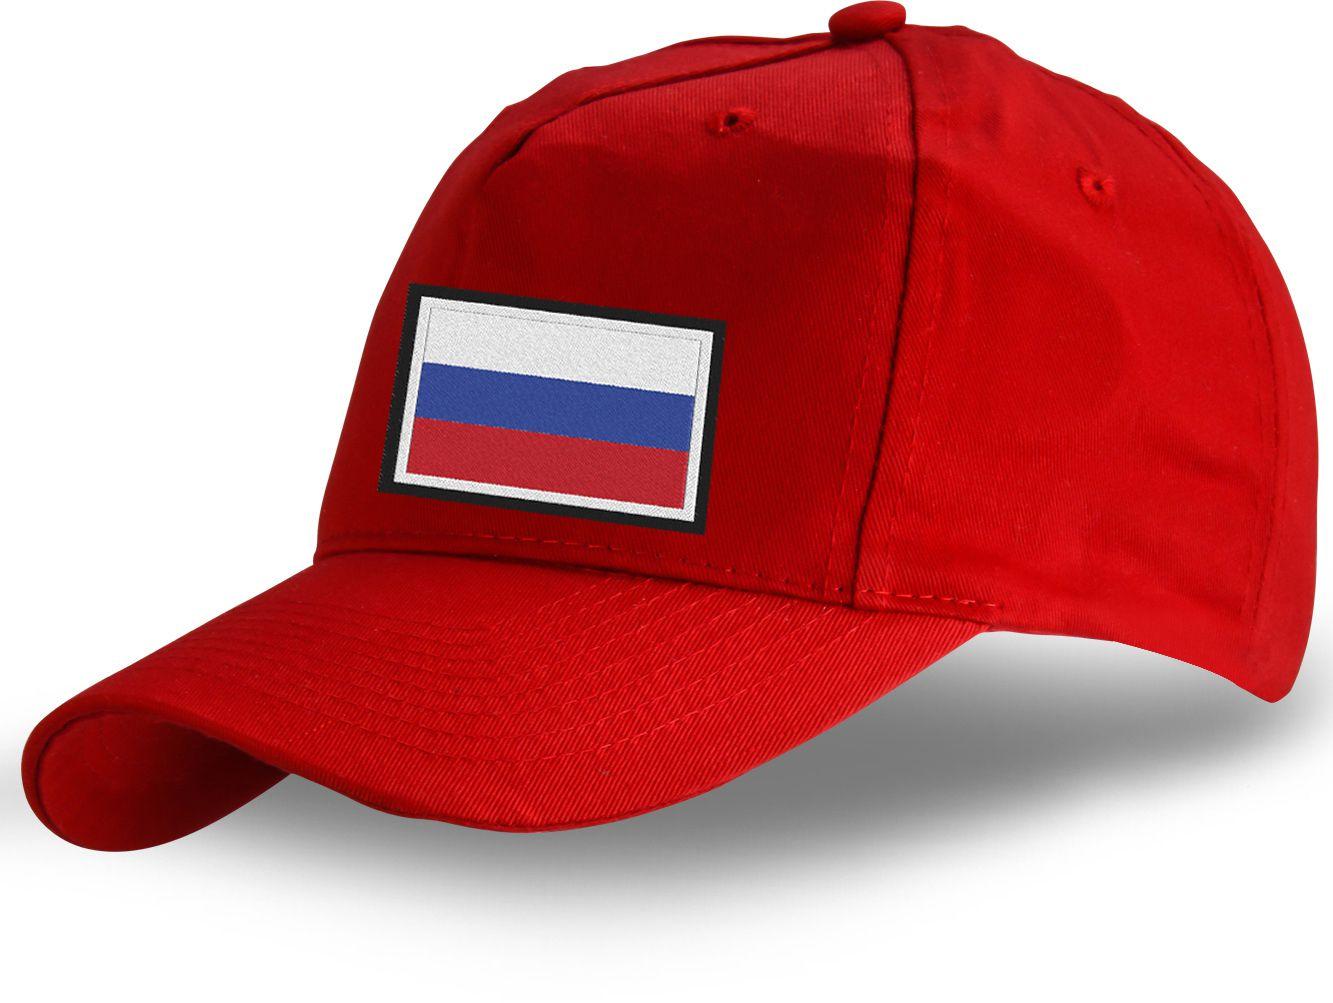 Мужская кепка Флаг России (Красная)